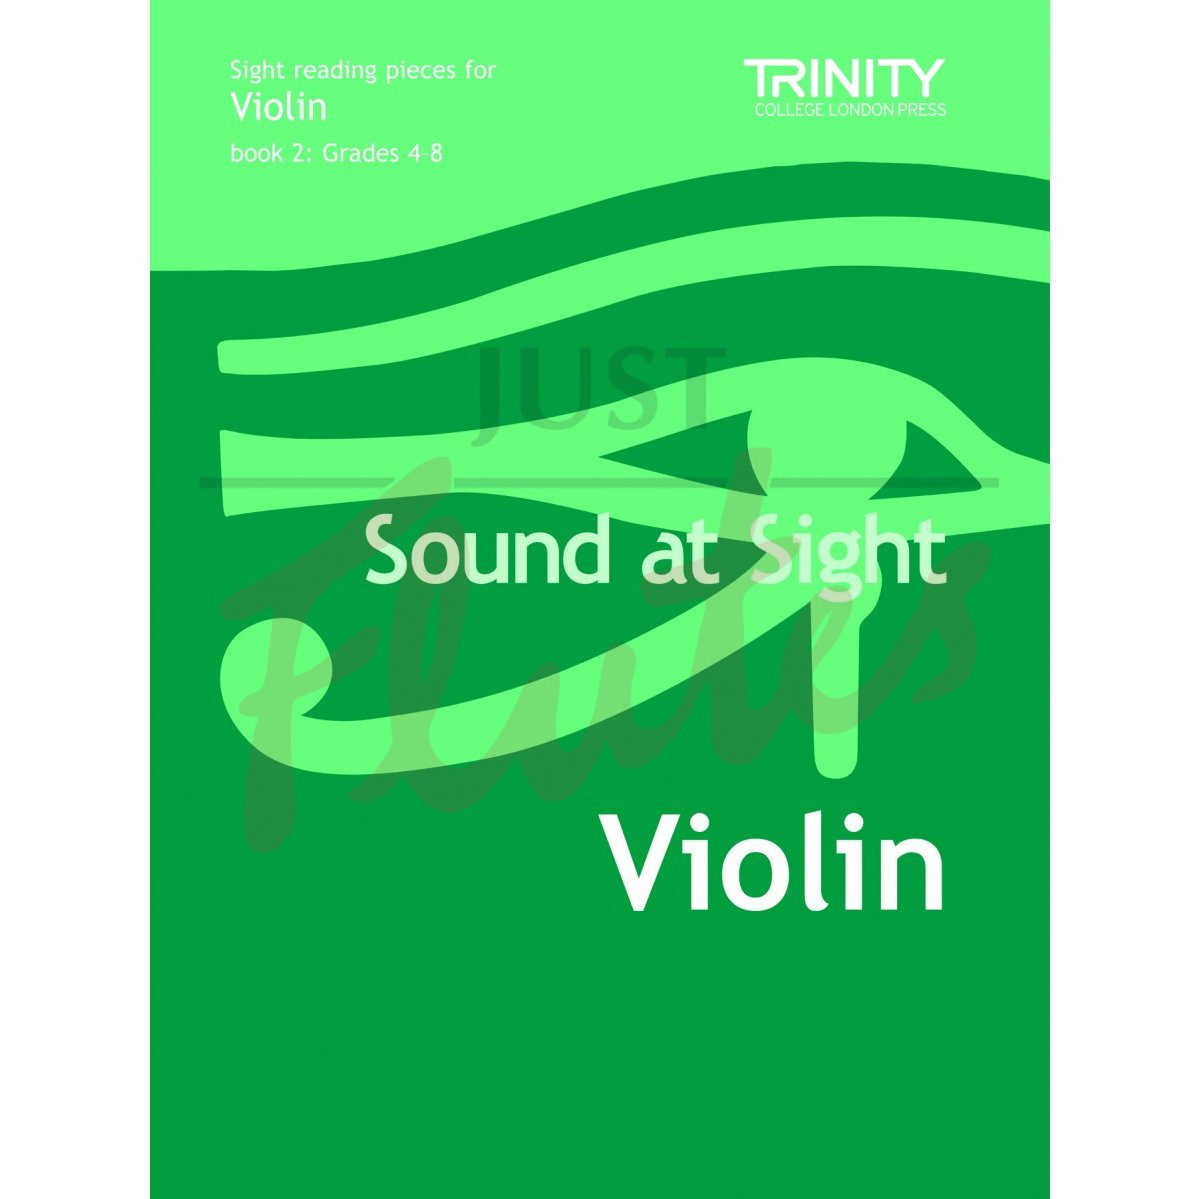 Sound At Sight [Violin] Grades 4-8